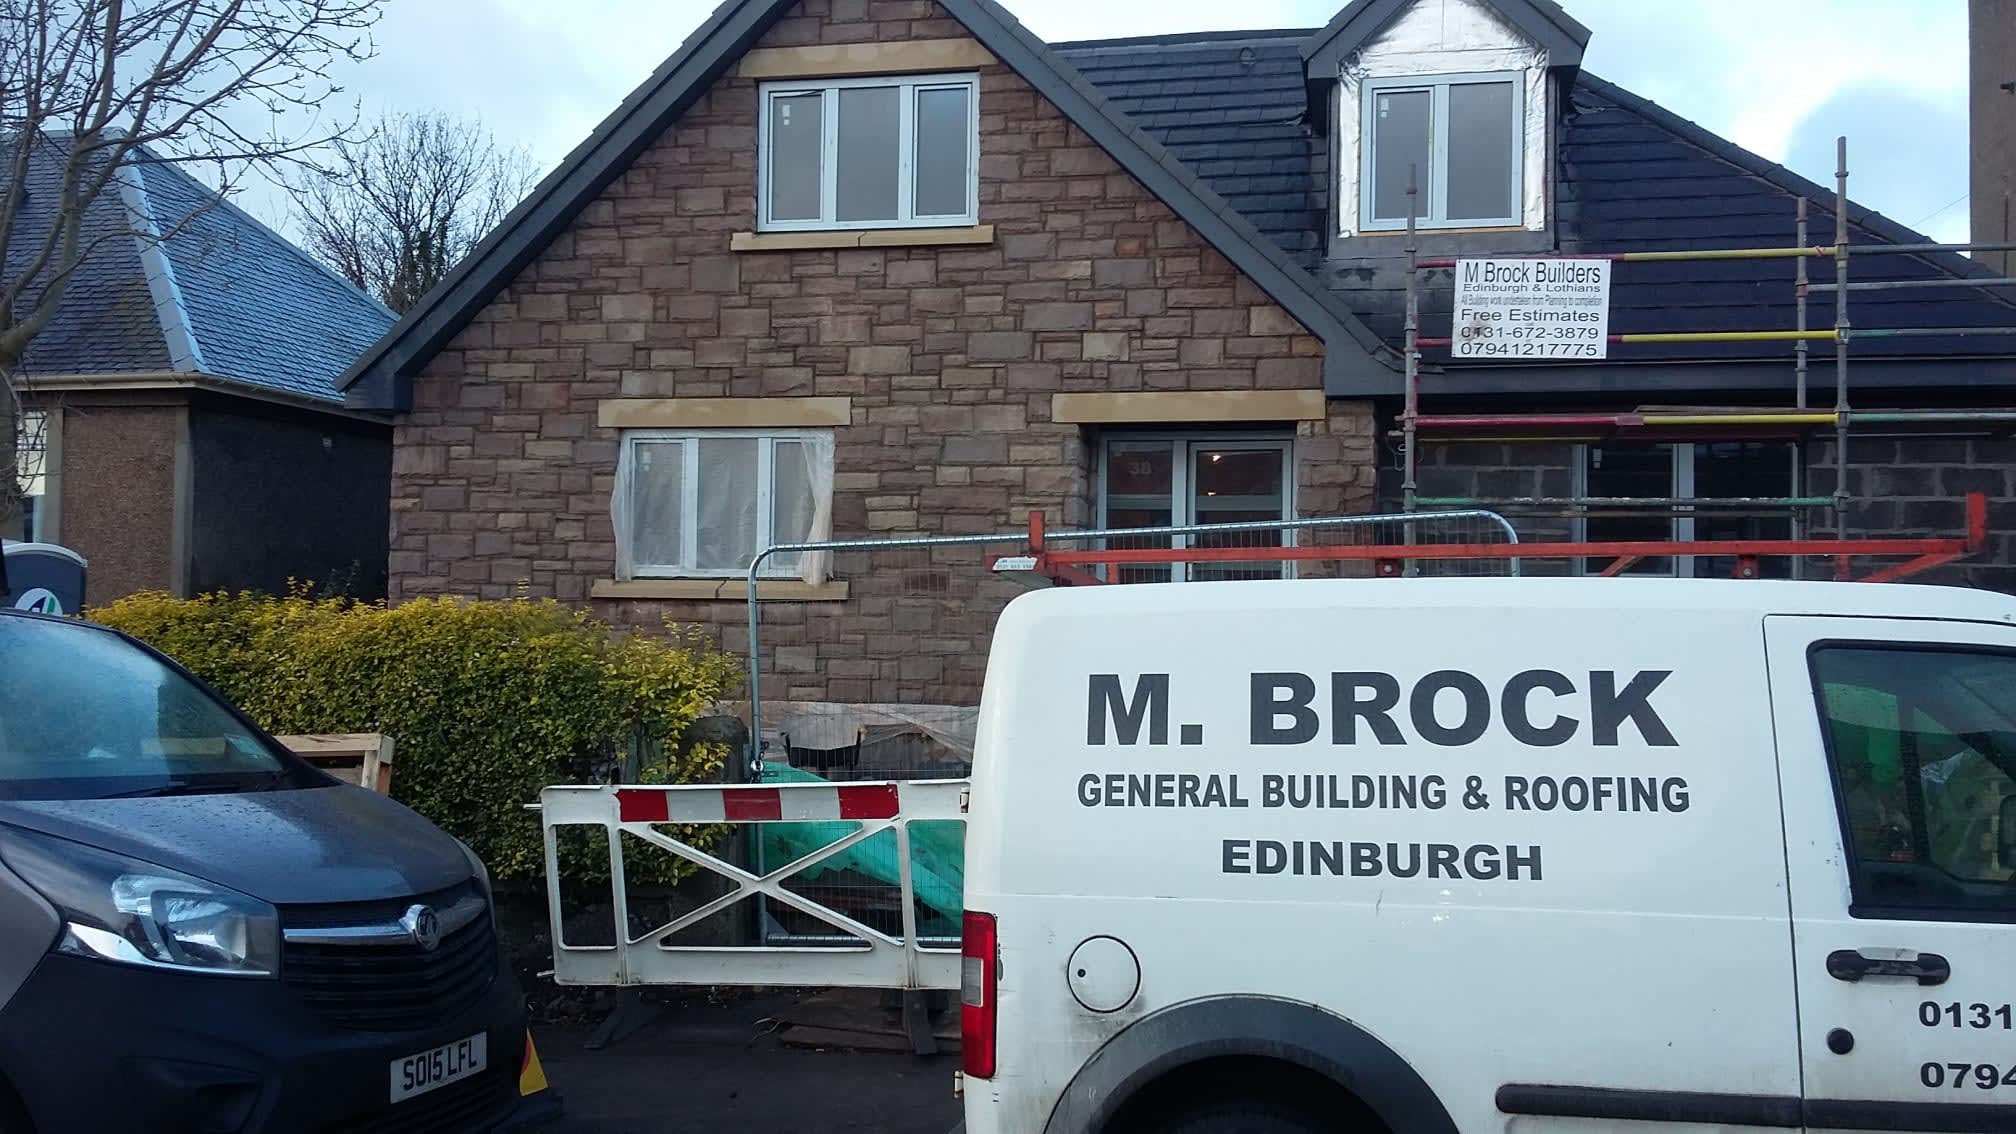 Mark Brock Building Co.Ltd Edinburgh 07941 217775